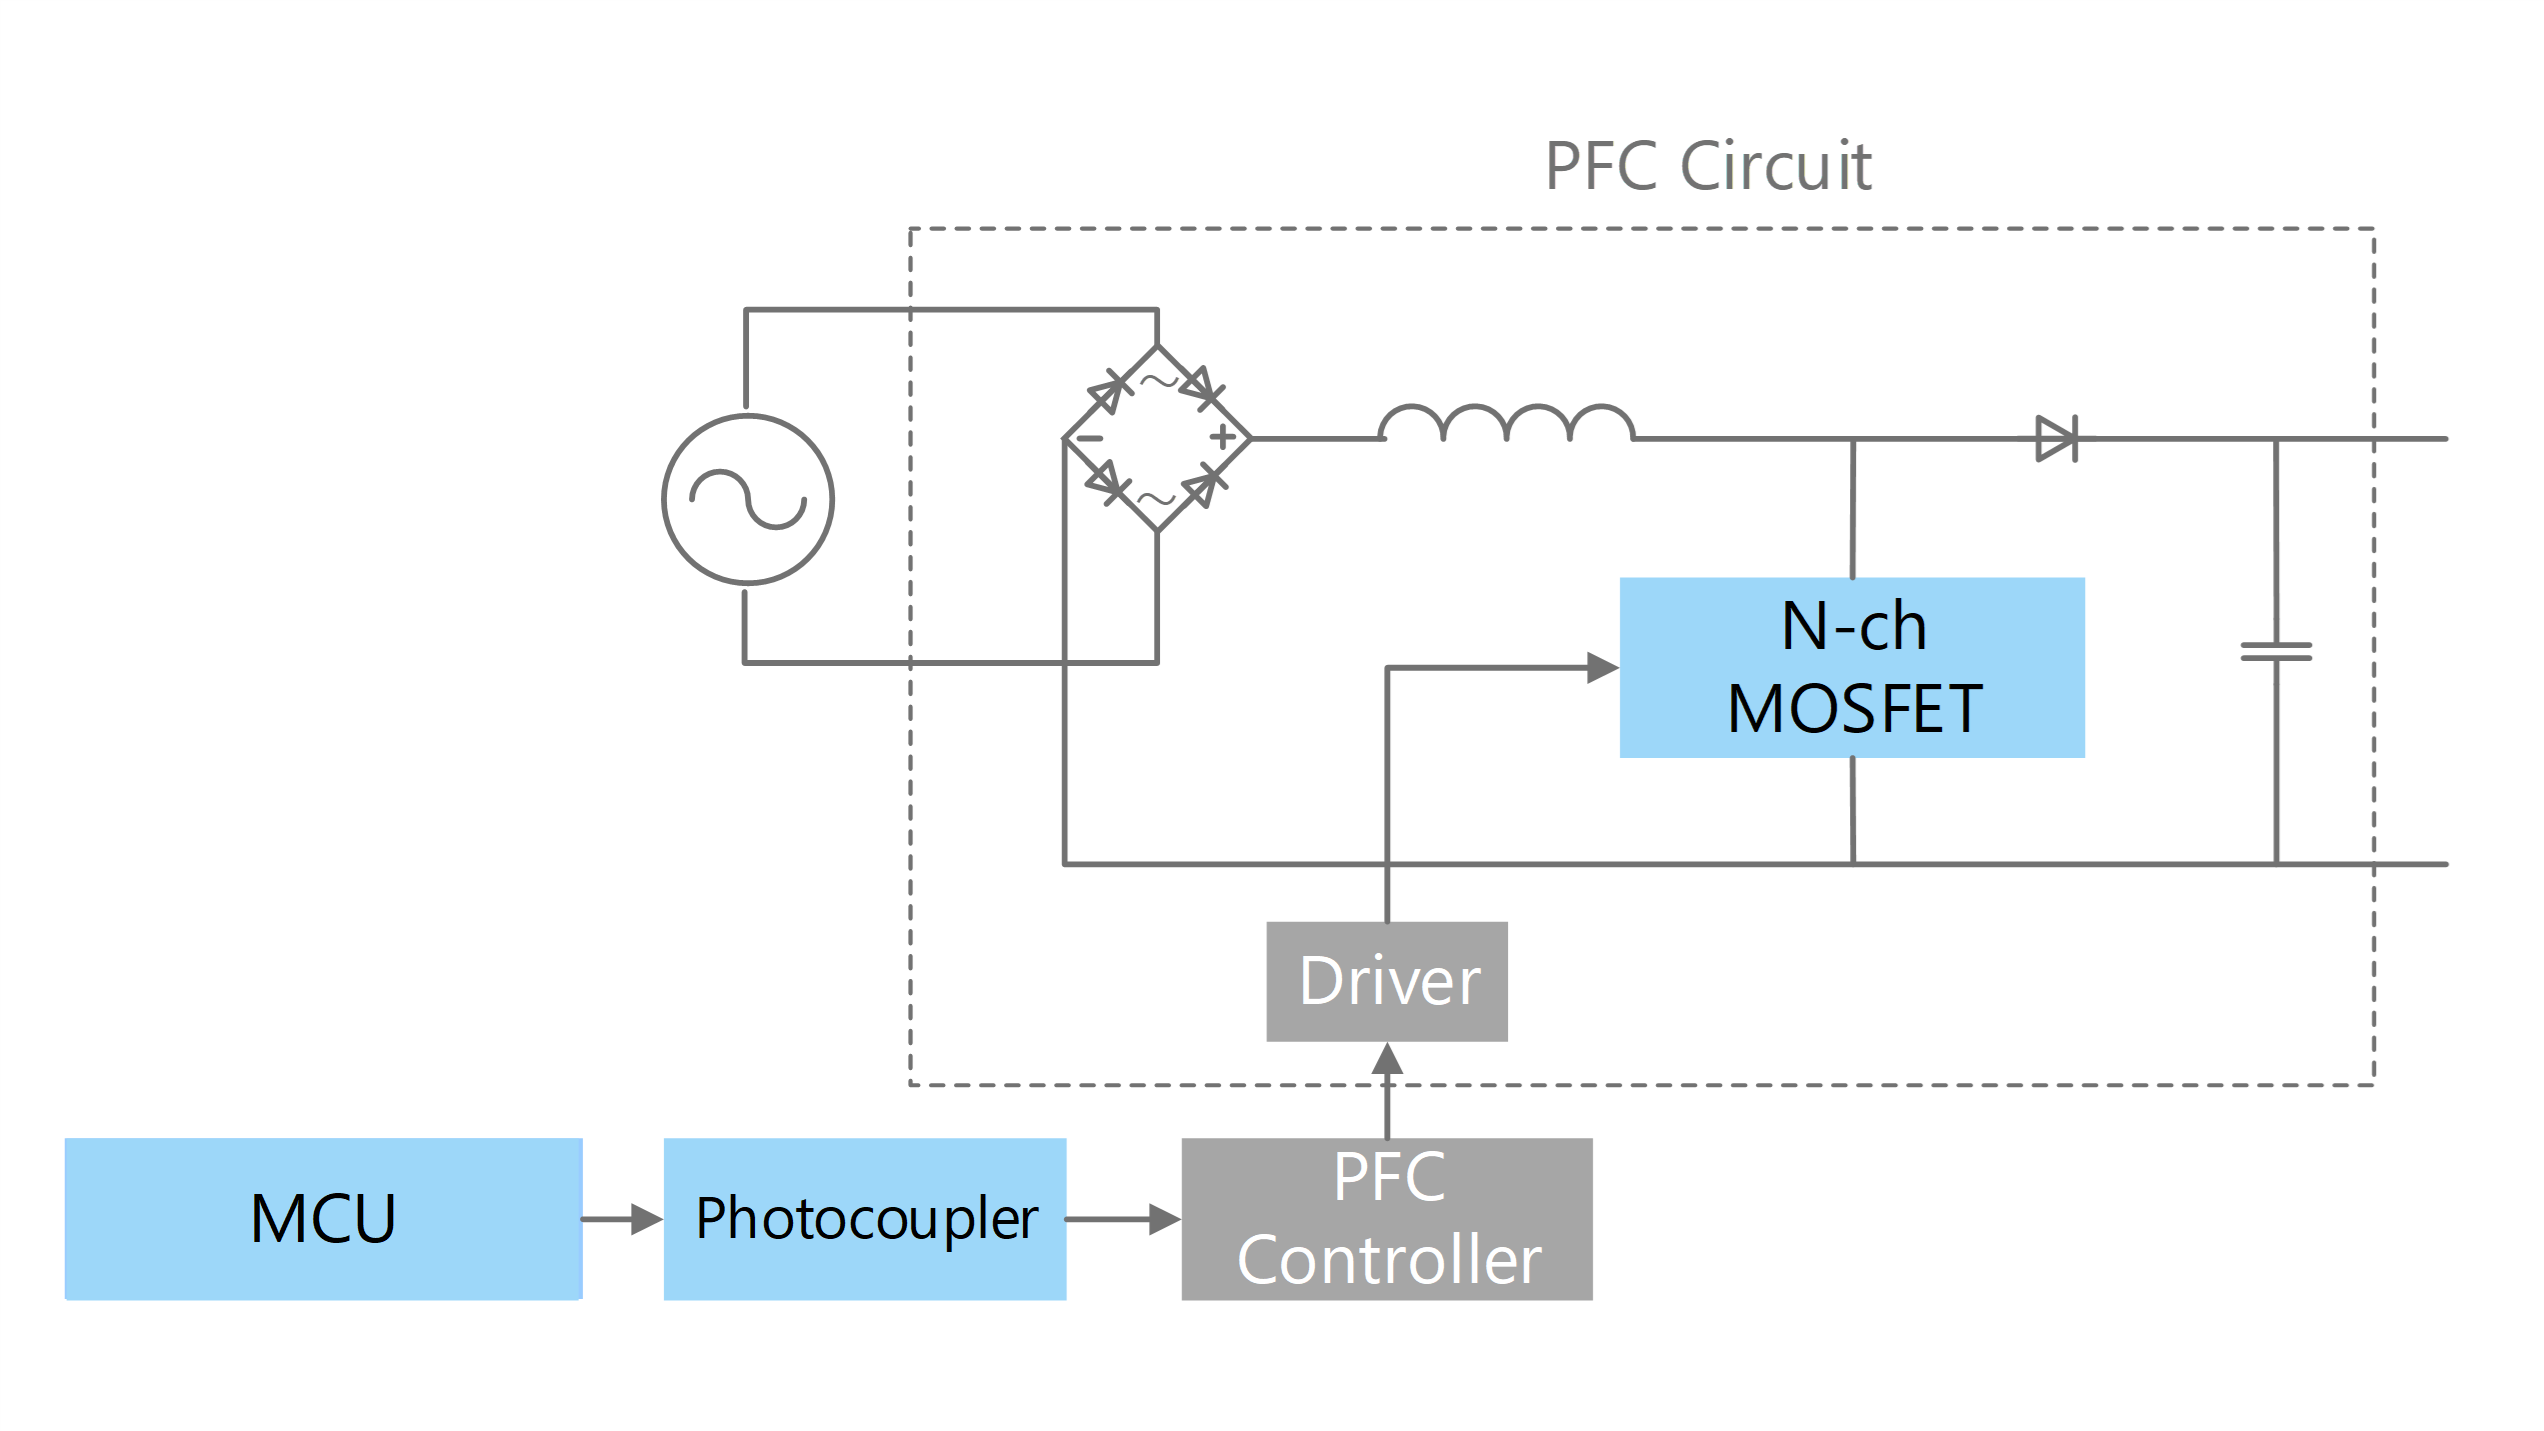 PFC circuit (Full switching)